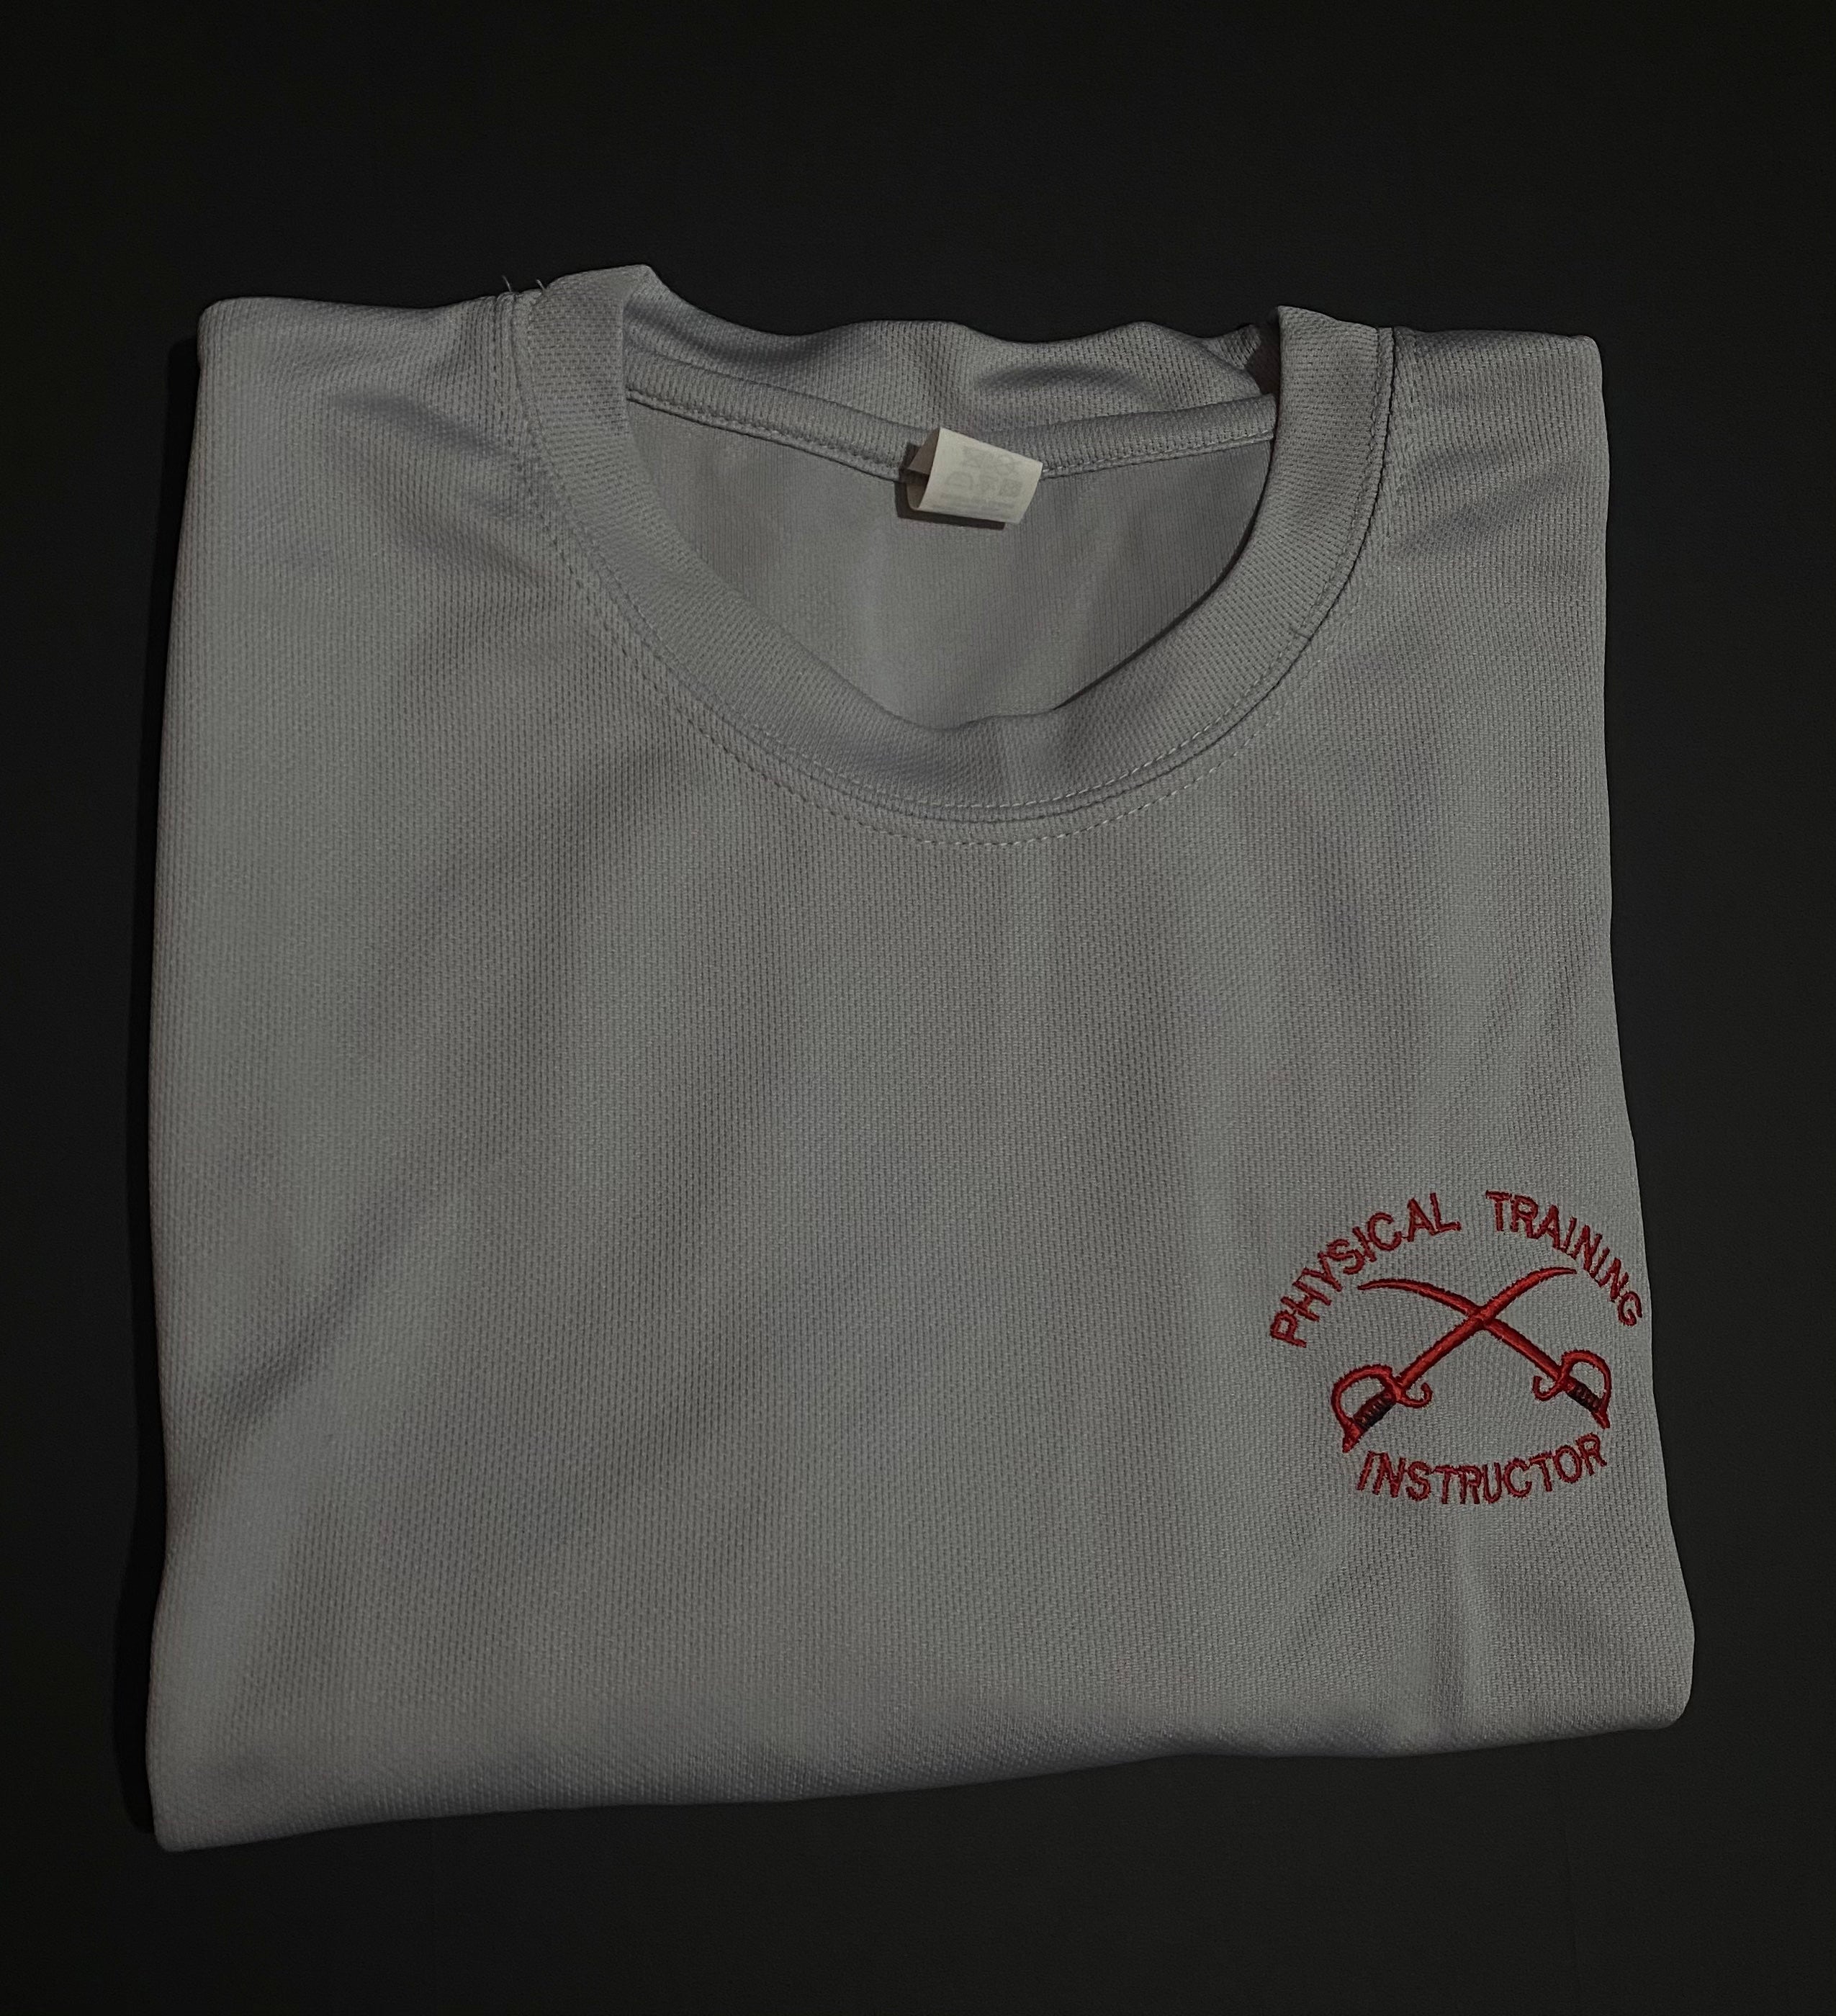 2 X PTI Performance Dri-Fit T-shirt (Multi Deal) 1303